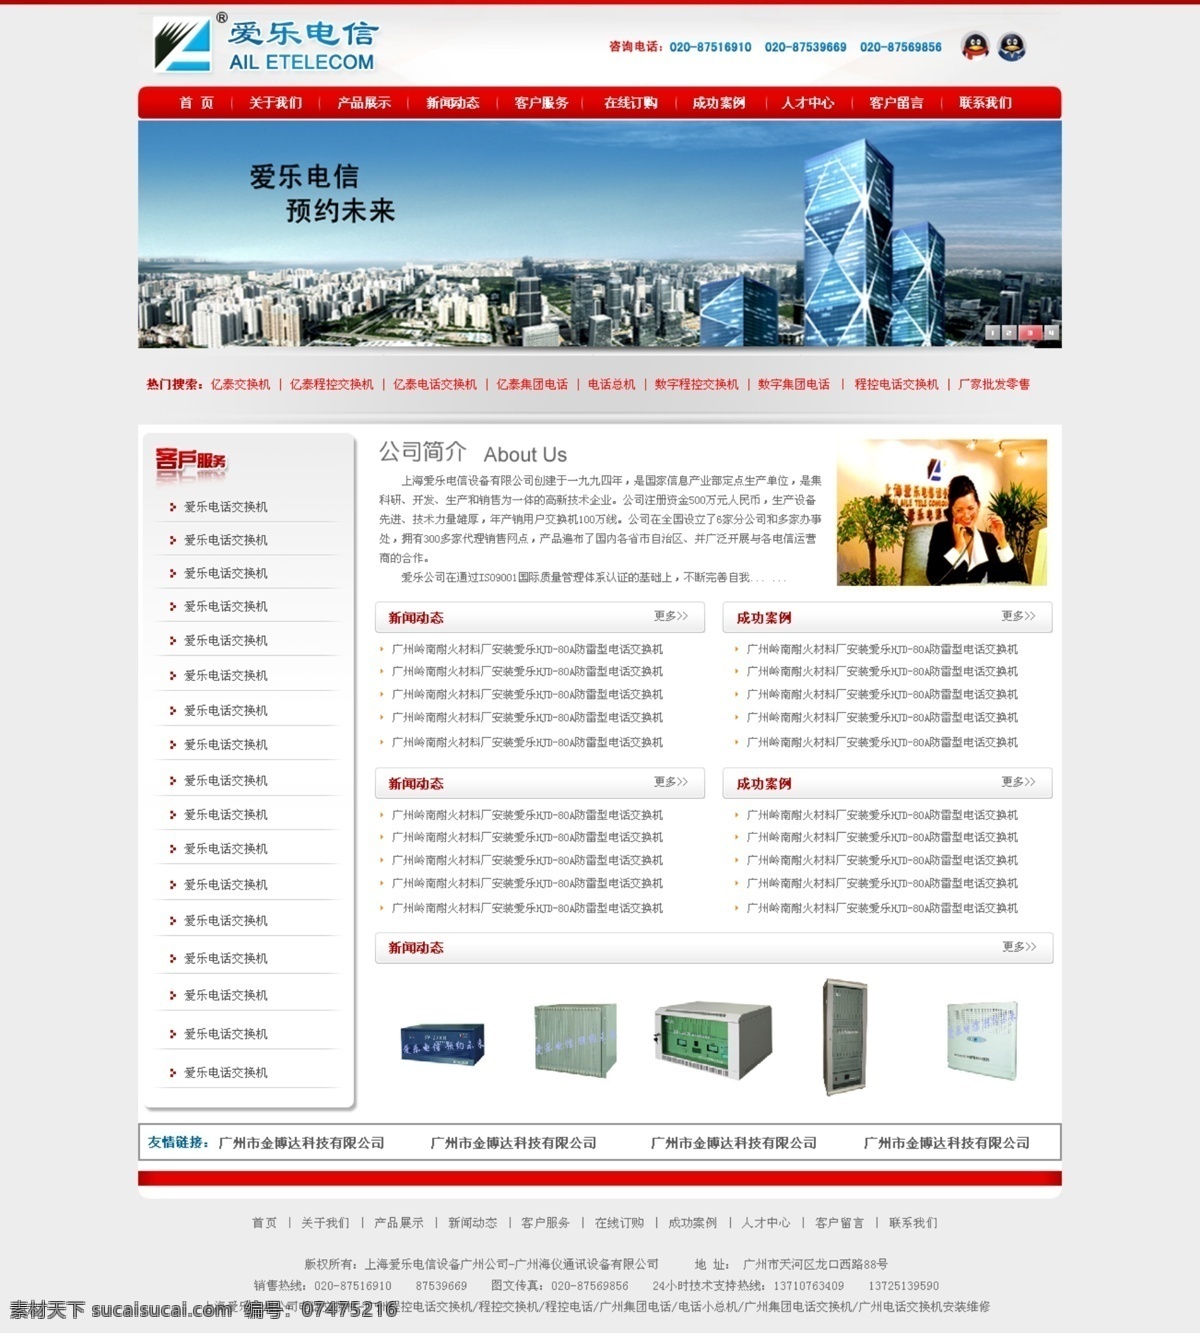 电信 网页 平面图 网页模板 网页设计 网站 源文件 中文模版 电信网页 交换机 电话交换机 网页素材